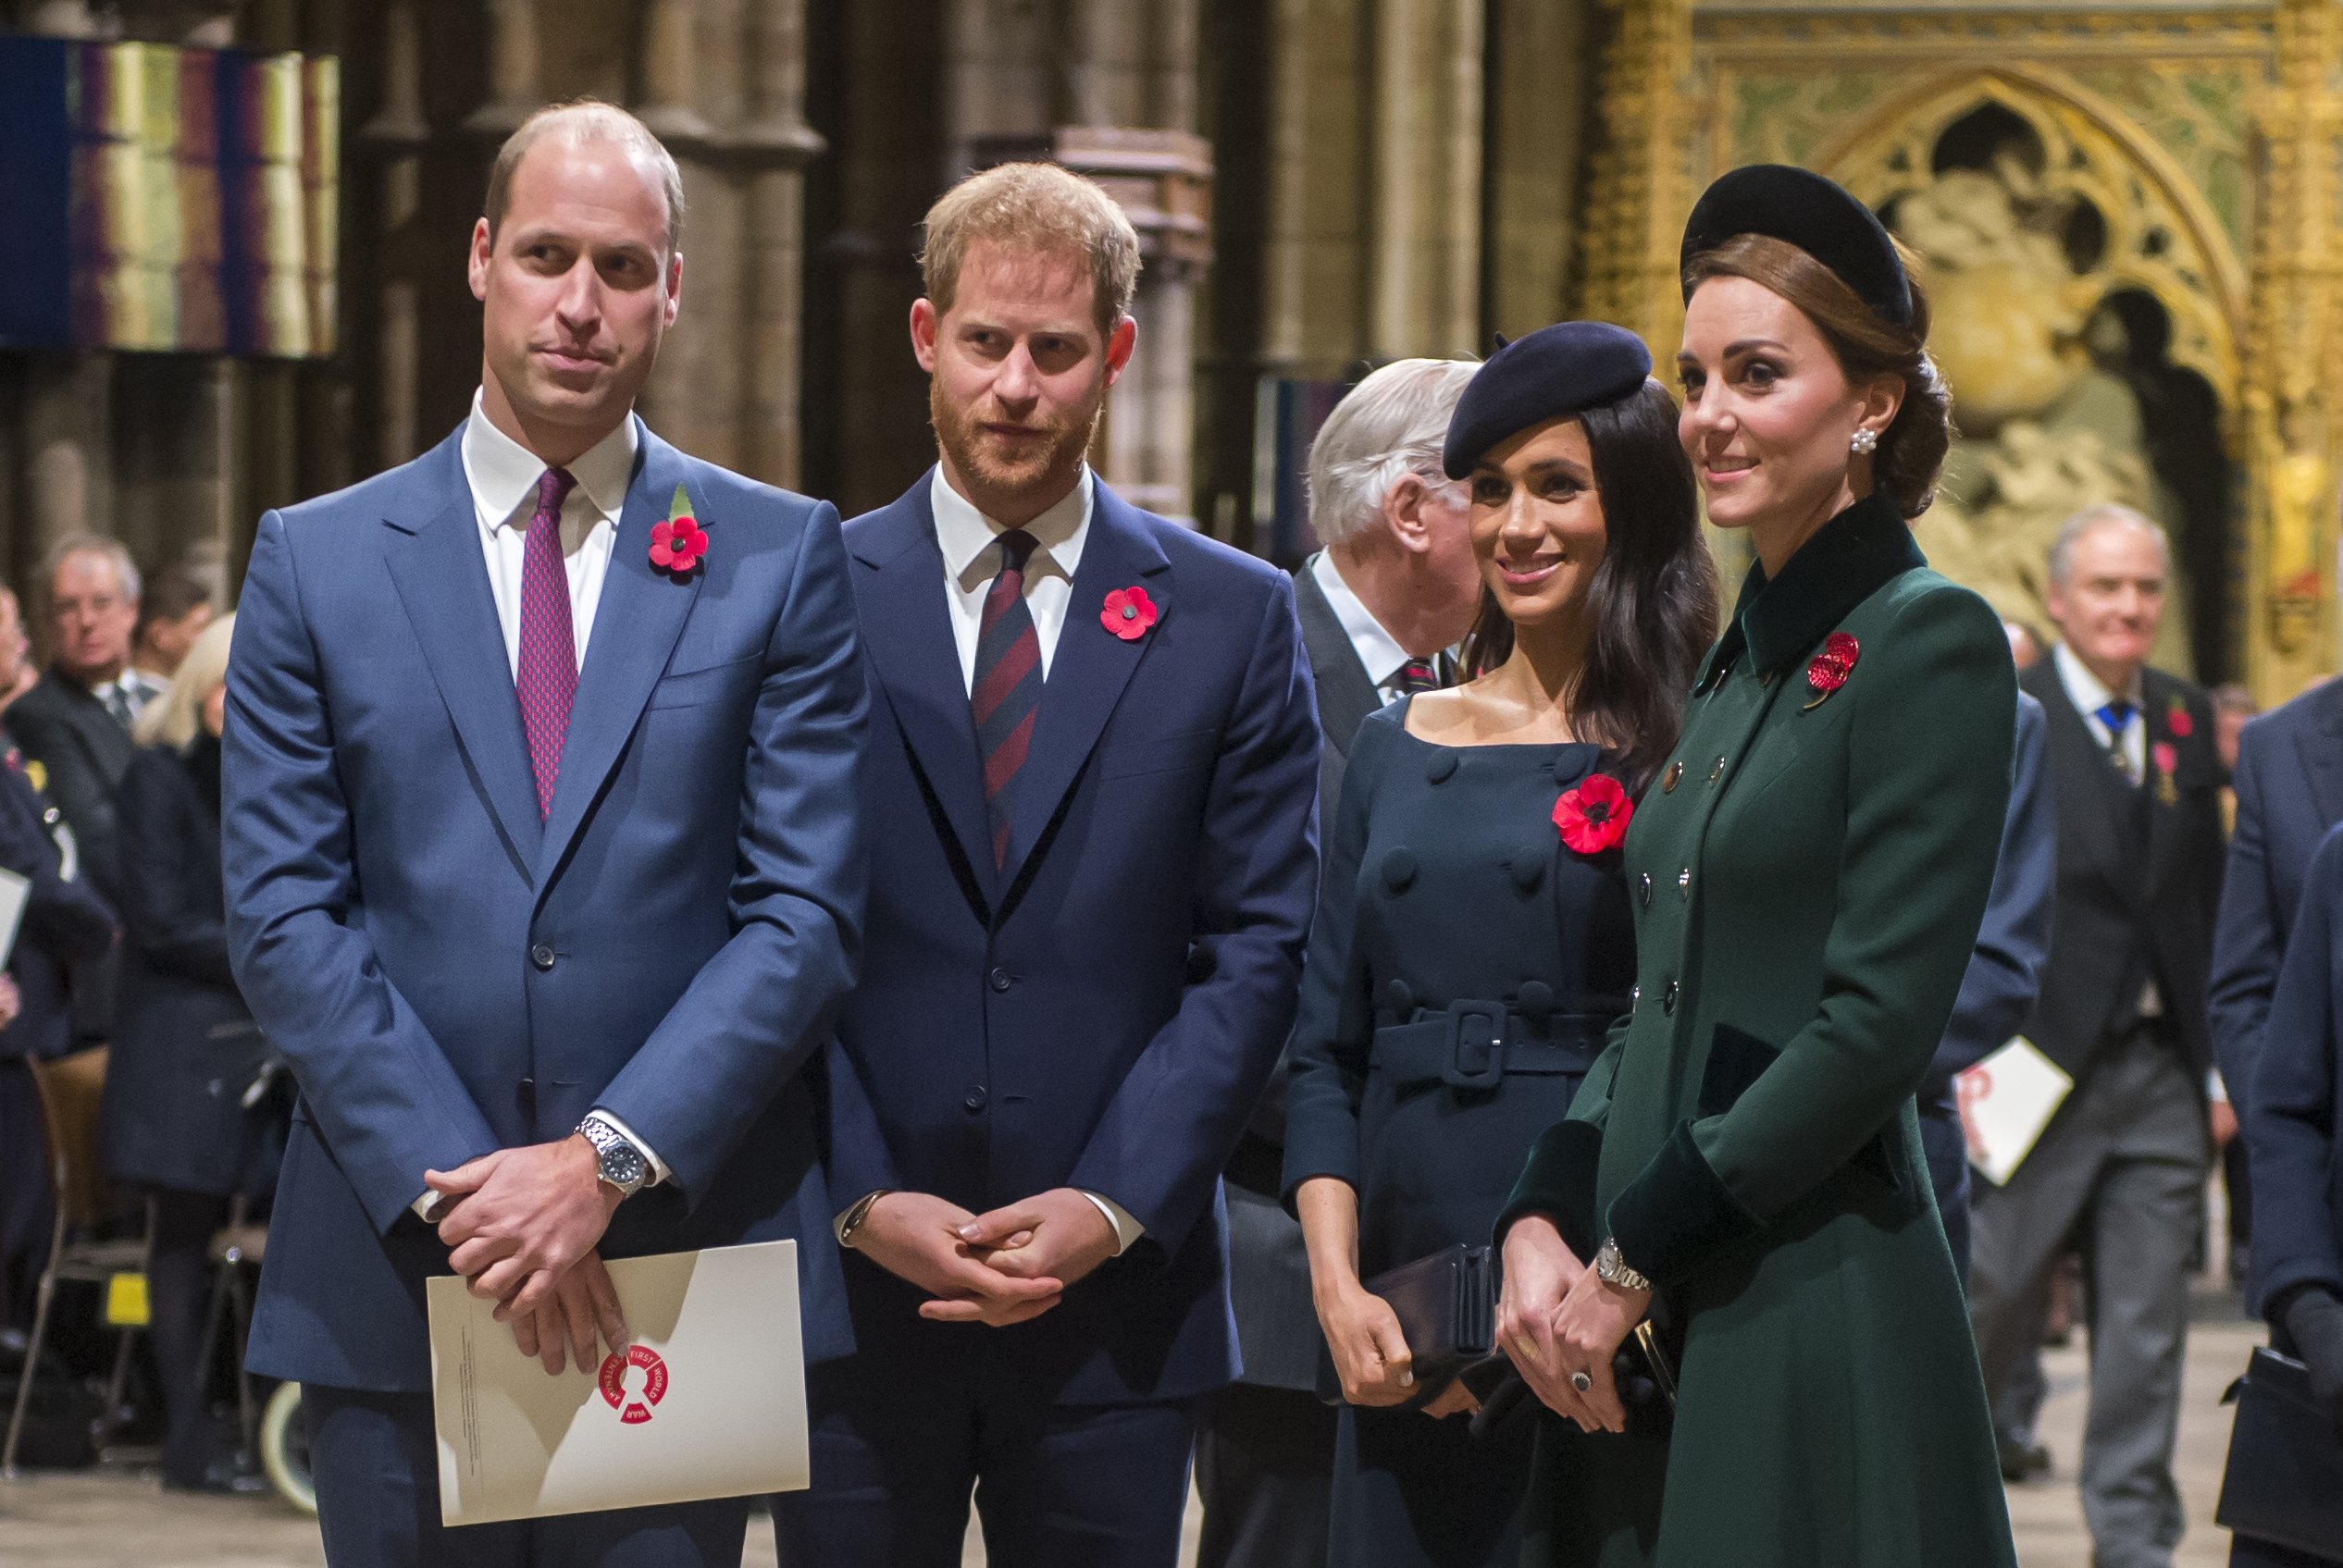 El príncipe William, el príncipe Harry, Meghan Markle y Kate Middleton llegan a la Abadía de Westminster para asistir a un servicio para conmemorar el centenario del Armisticio el 11 de noviembre de 2018 en Londres. / Foto: Getty Images